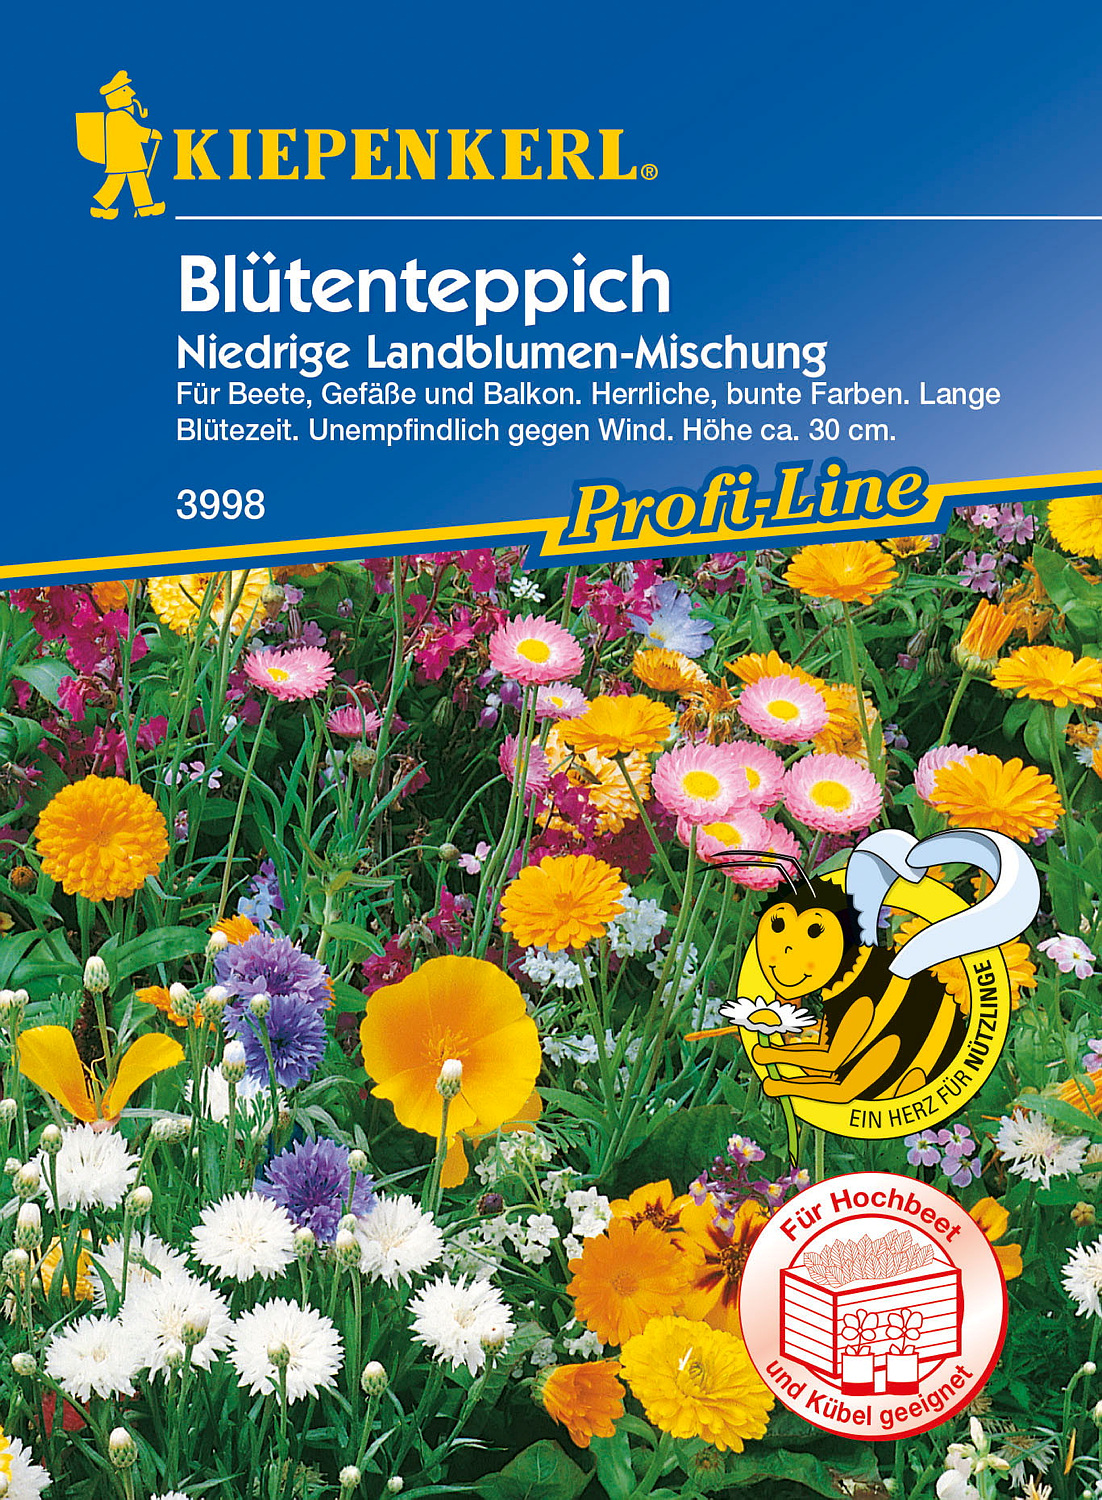 Kiepenkerl® Profi-Line Blumenmischung Blütenteppich